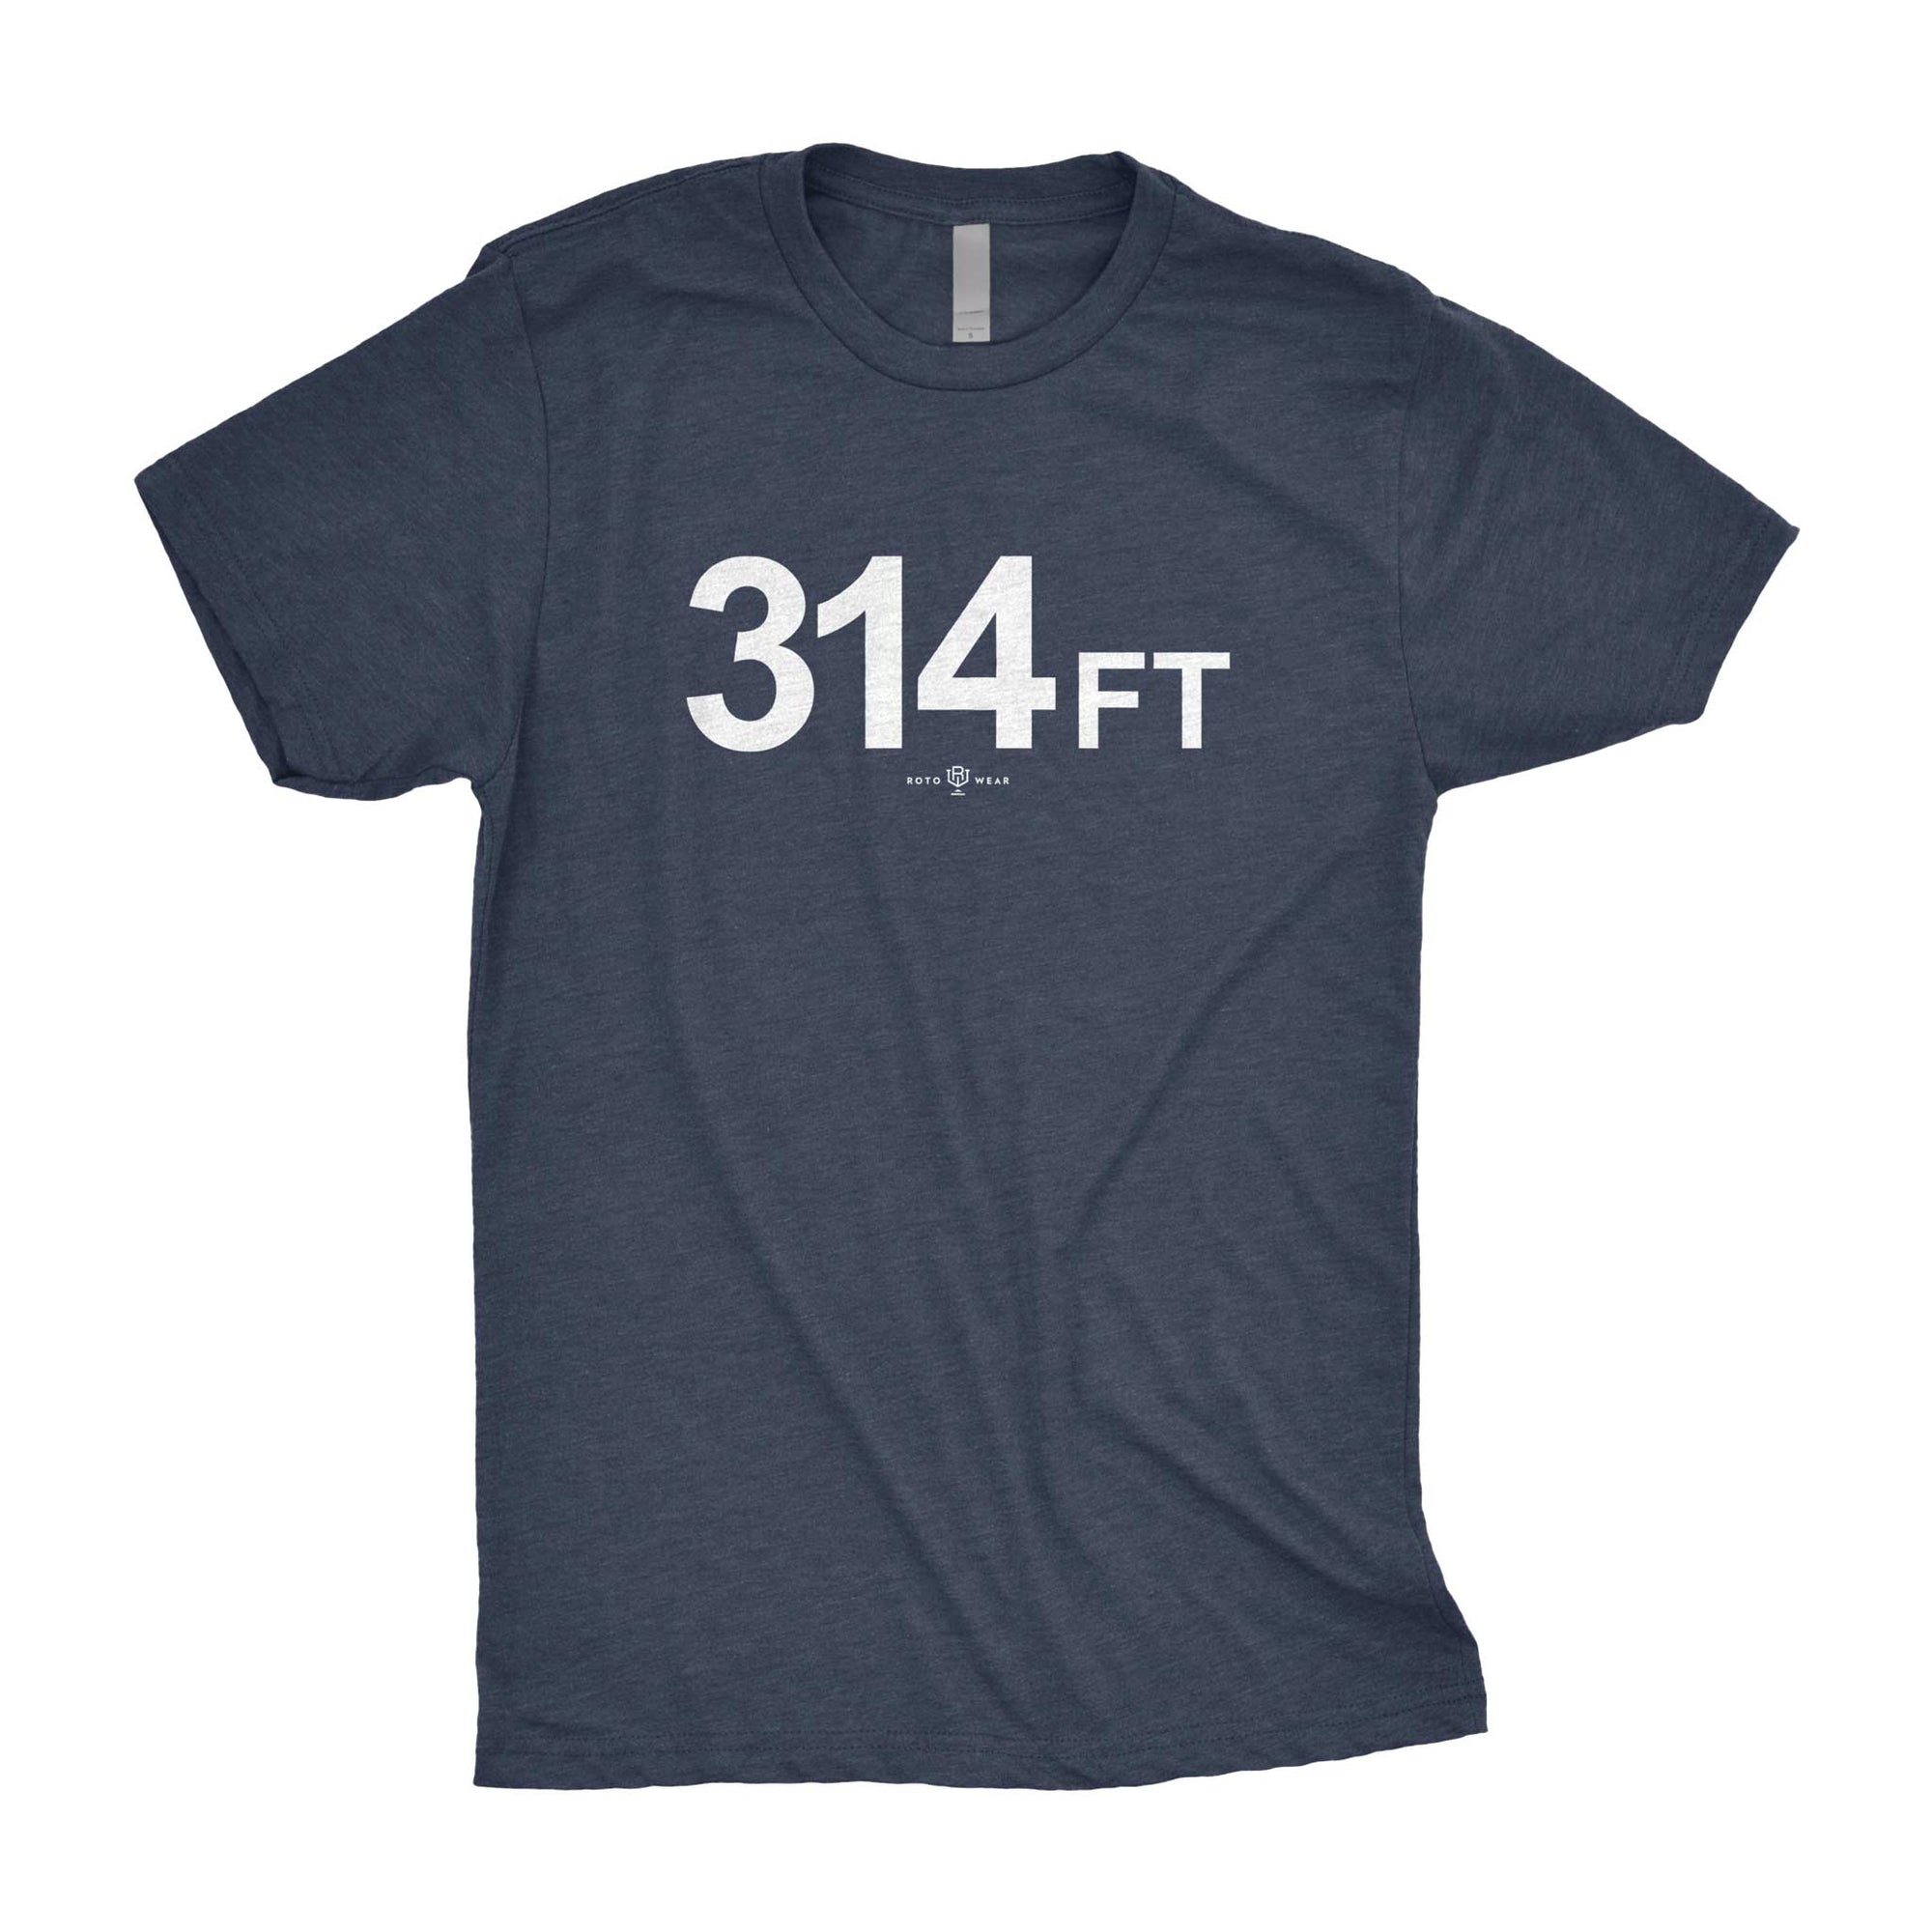 314 Ft. Right Field Yankee Stadium Shirt